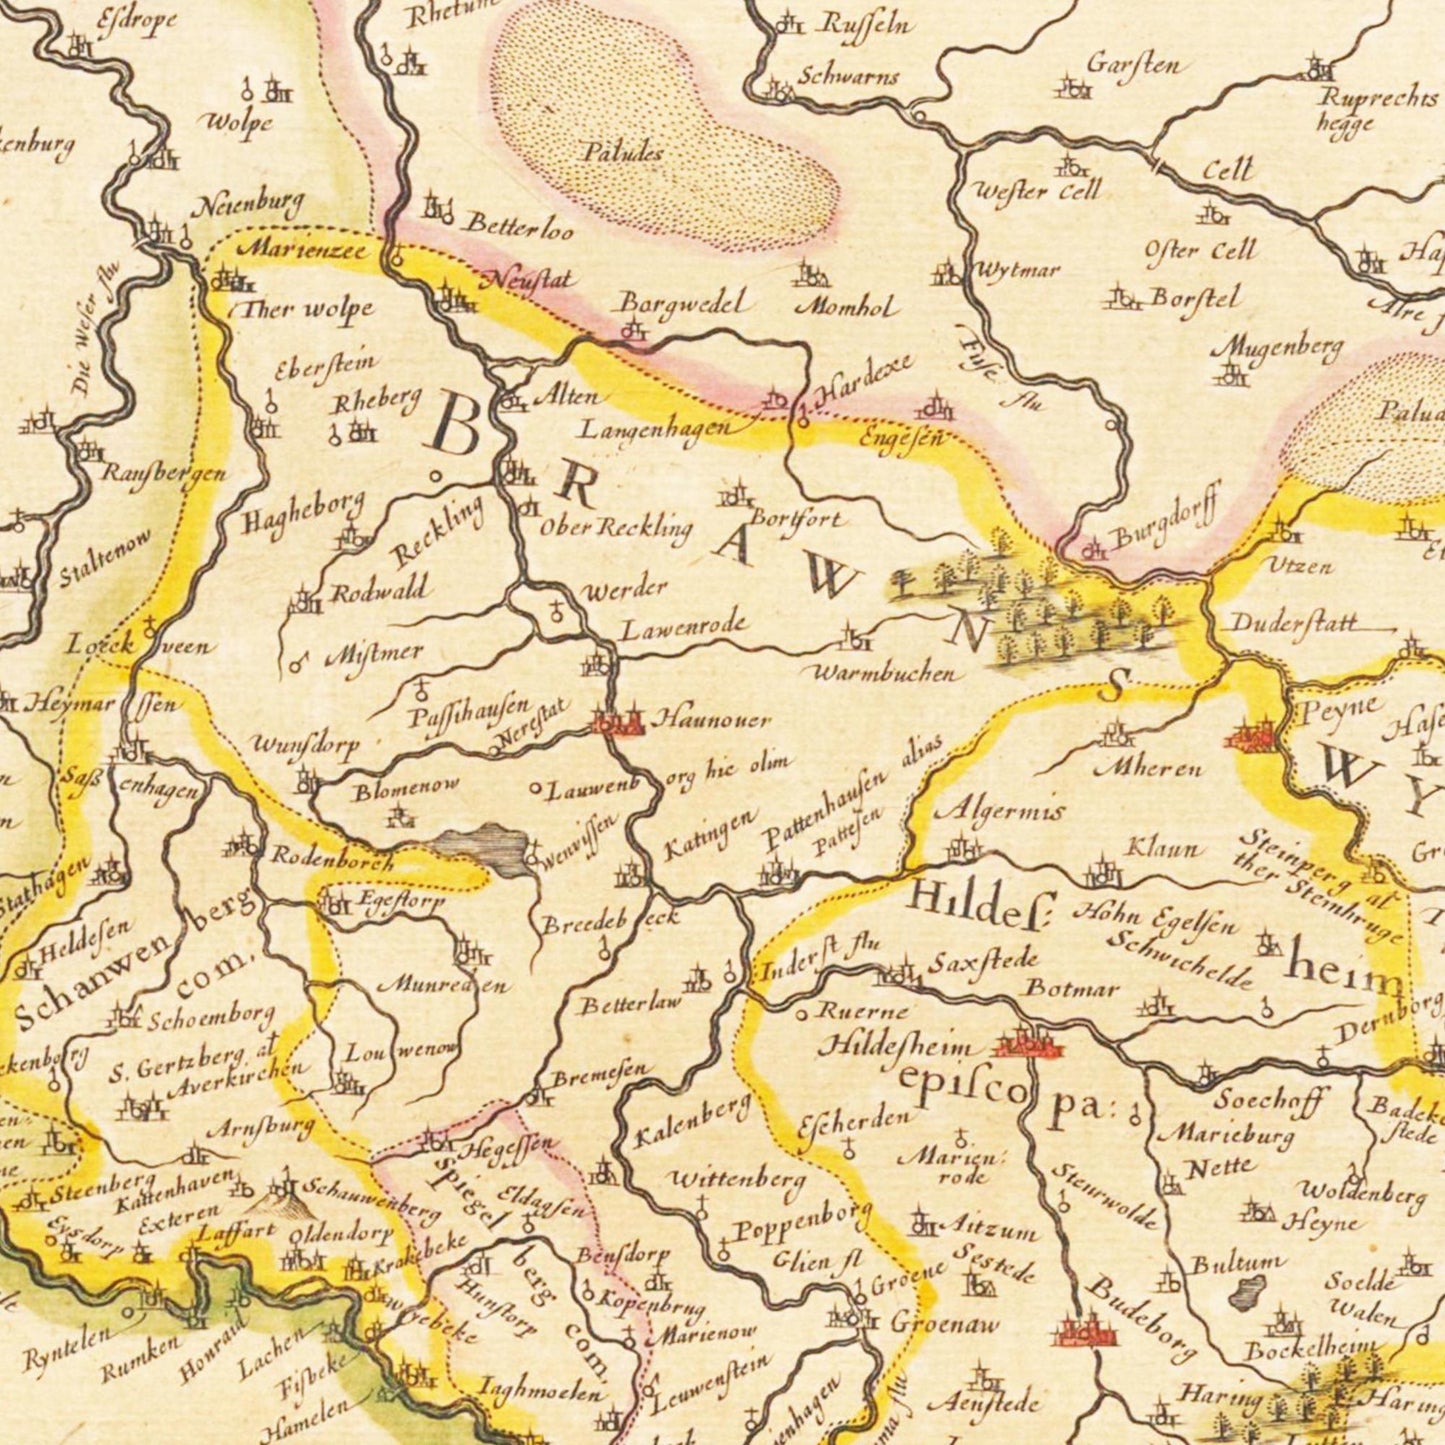 Historische Landkarte Braunschweig um 1635